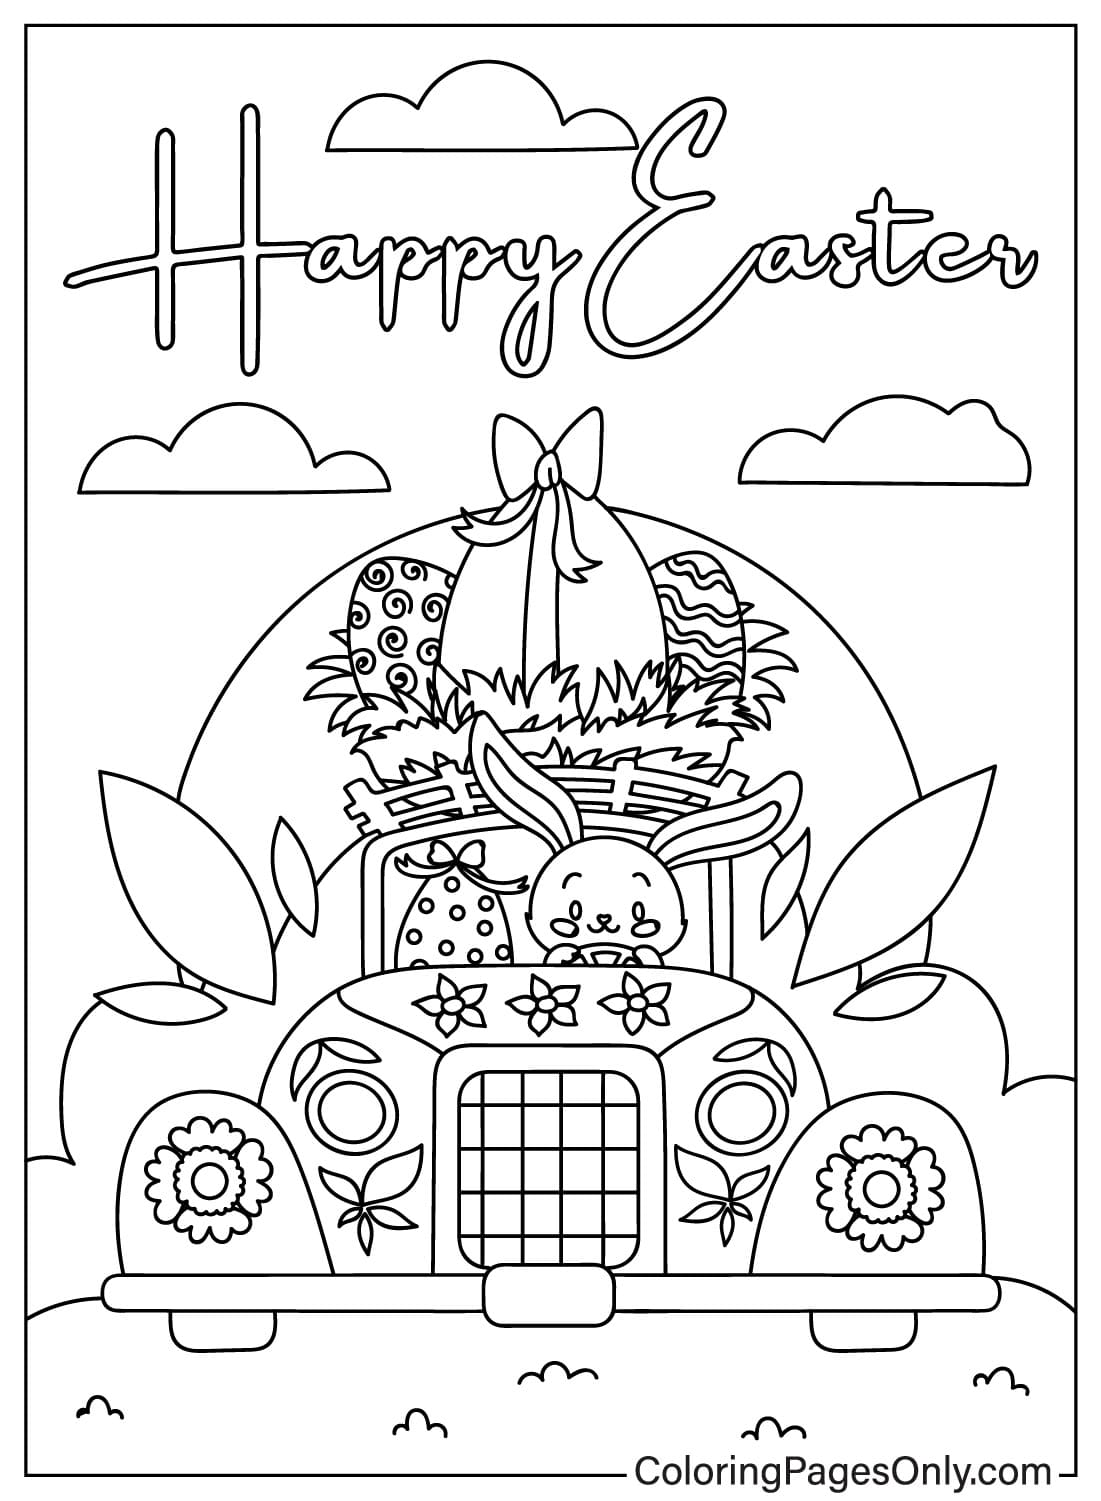 Página para colorear del conejito de Pascua gratis a partir de abril de 2024